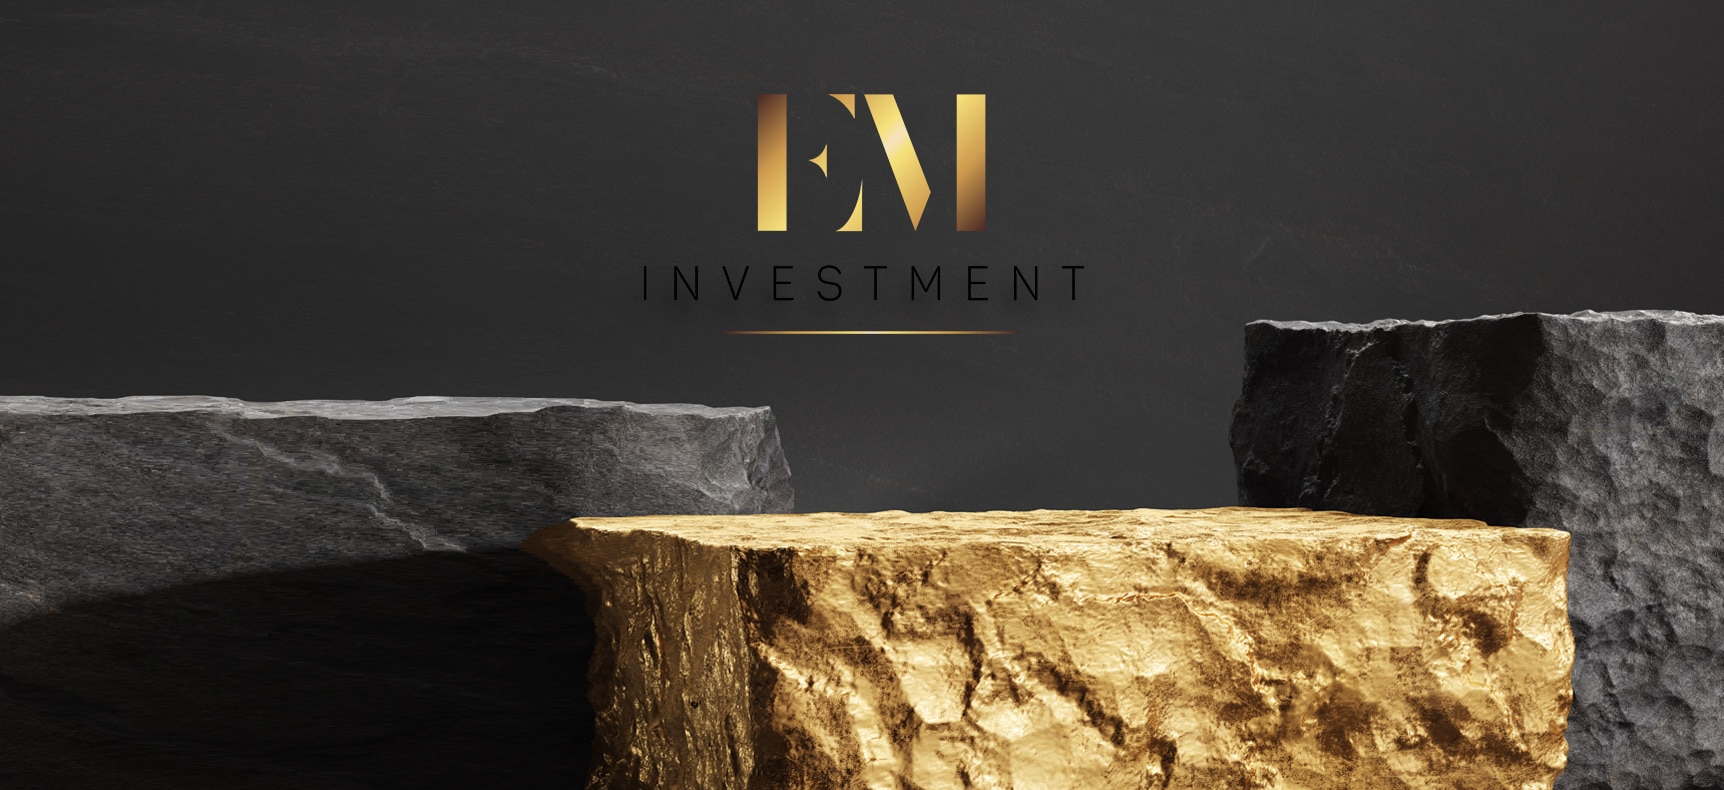 EM Investment | Logo erstellt von StatusZwo.com